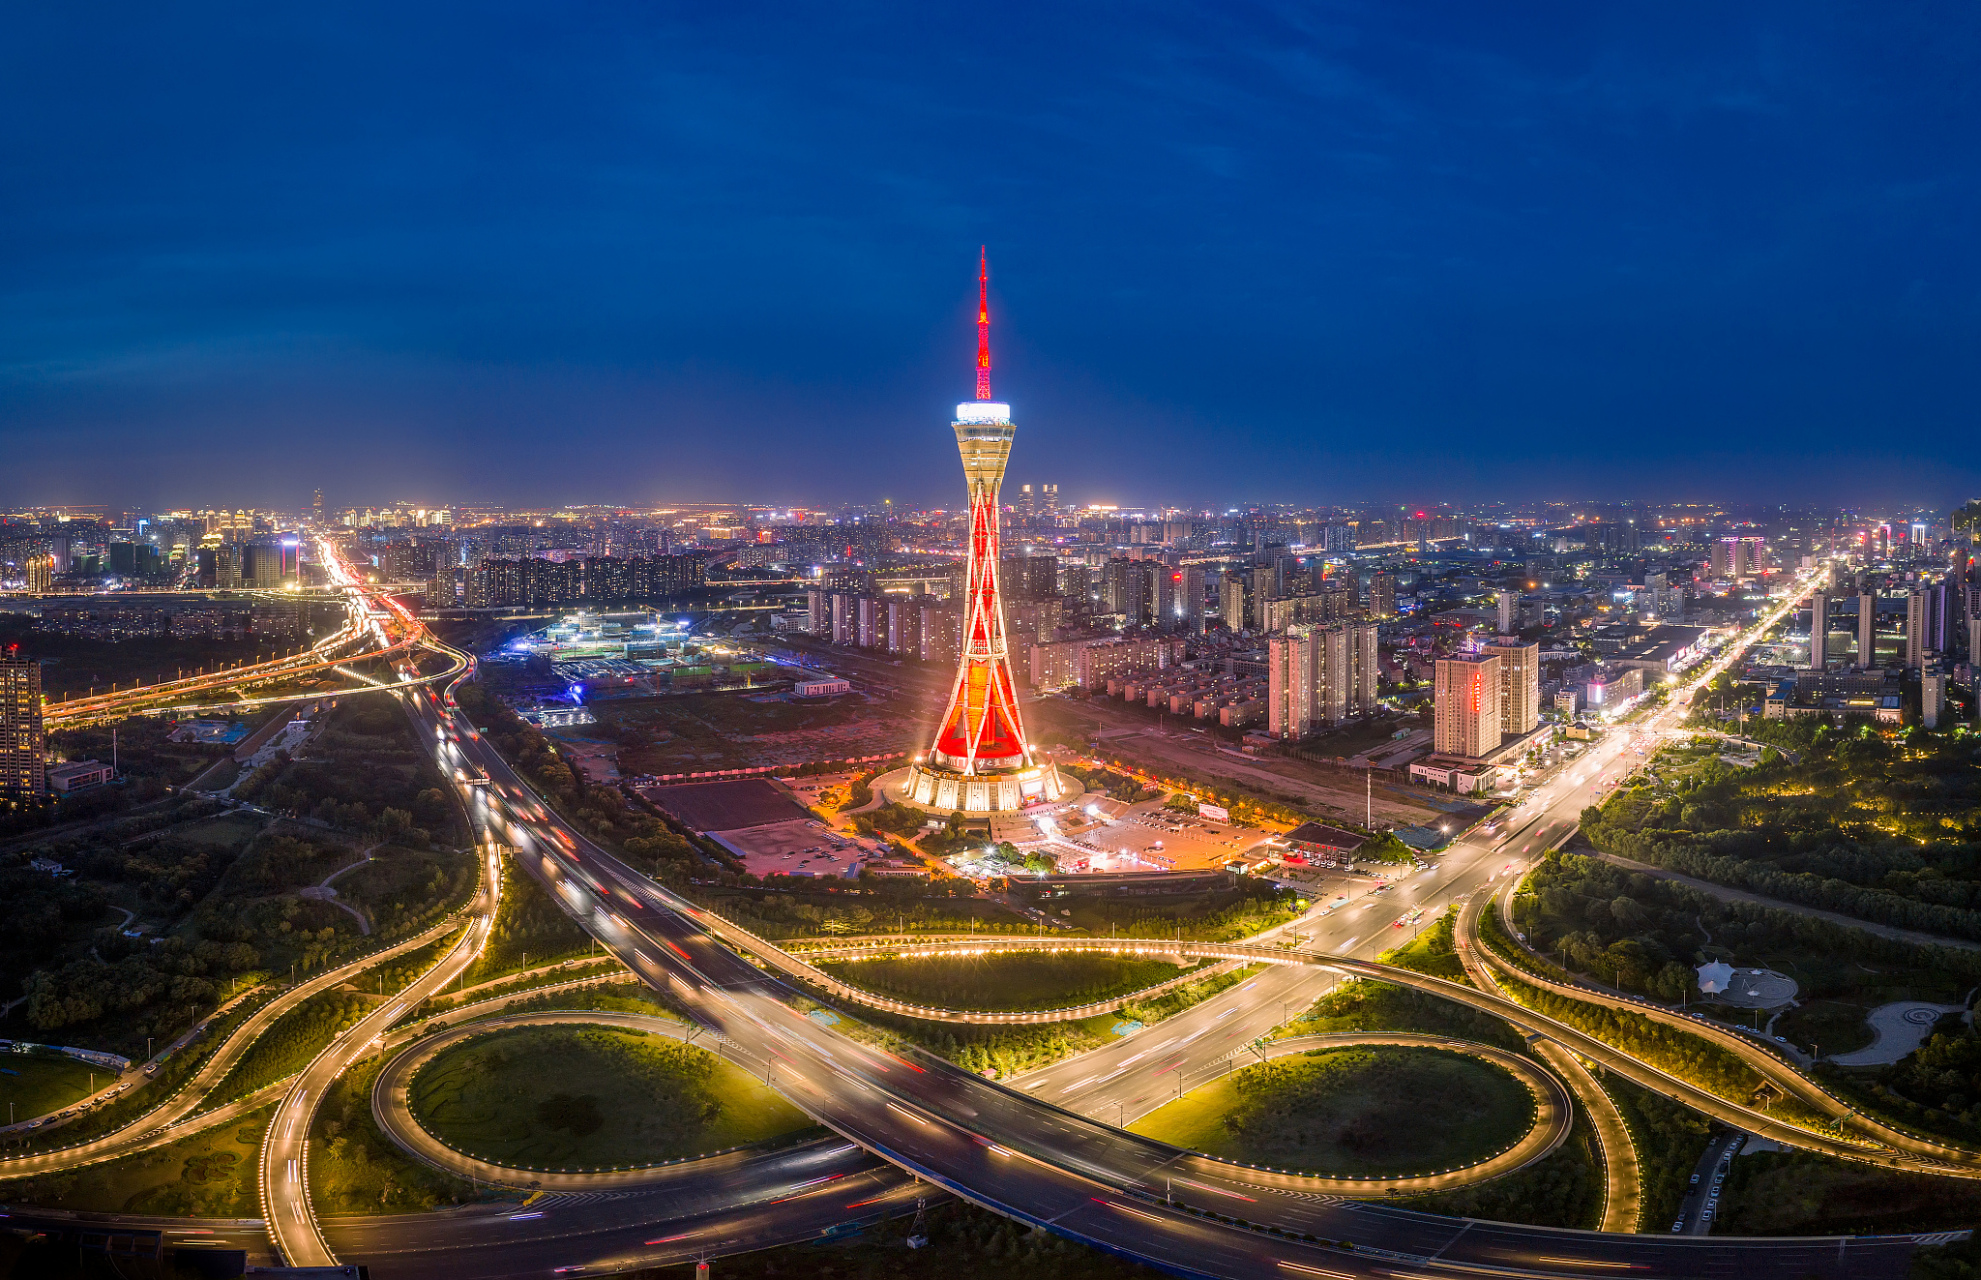 中原福塔是世界最高的全钢结构电视发射塔,也是河南省文化产业的标志